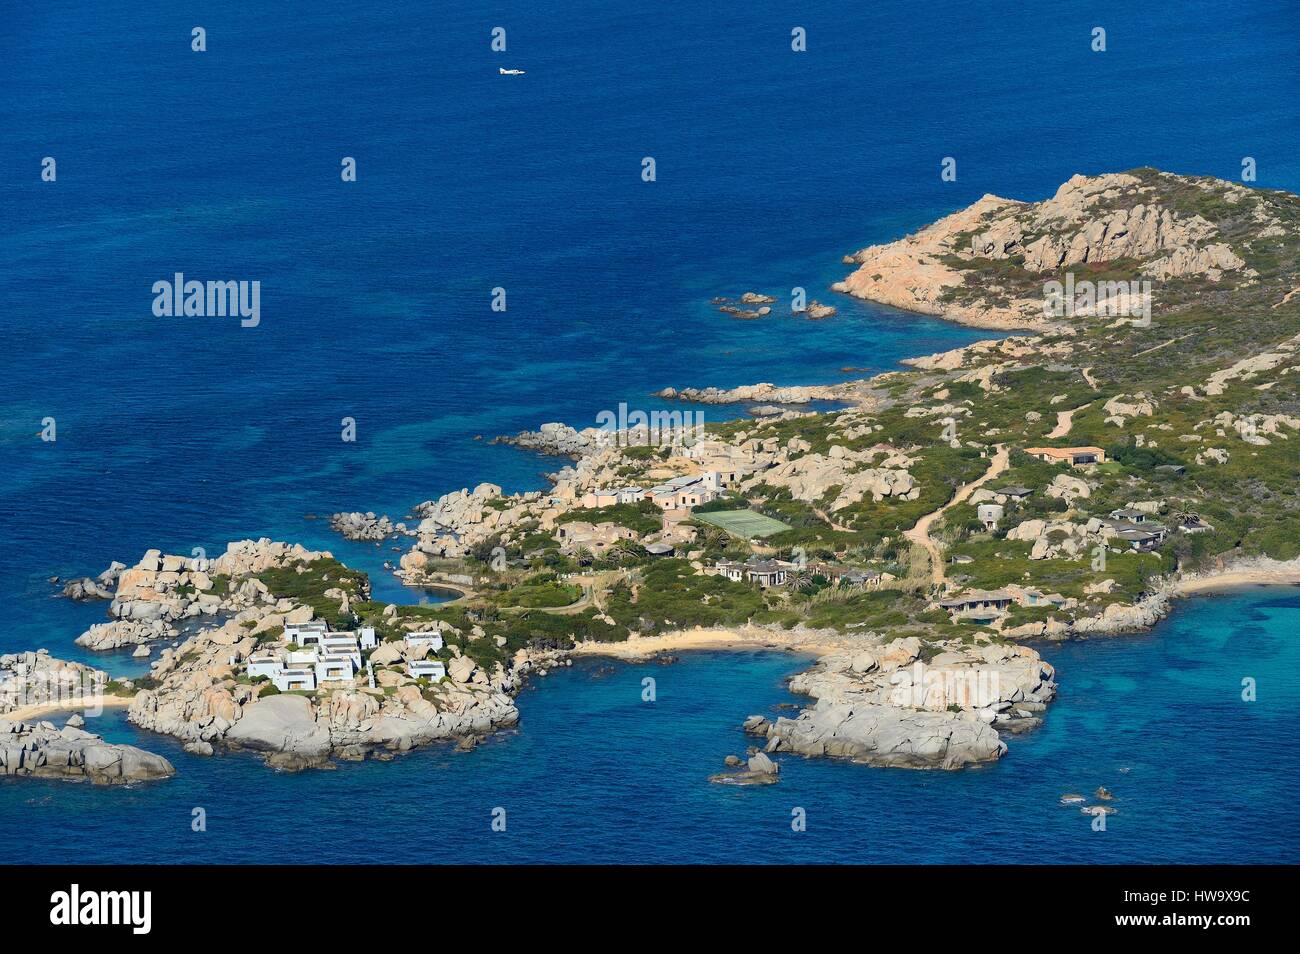 France, Corse du Sud, Bonifacio, Cavallo Island (aerial view) Stock Photo